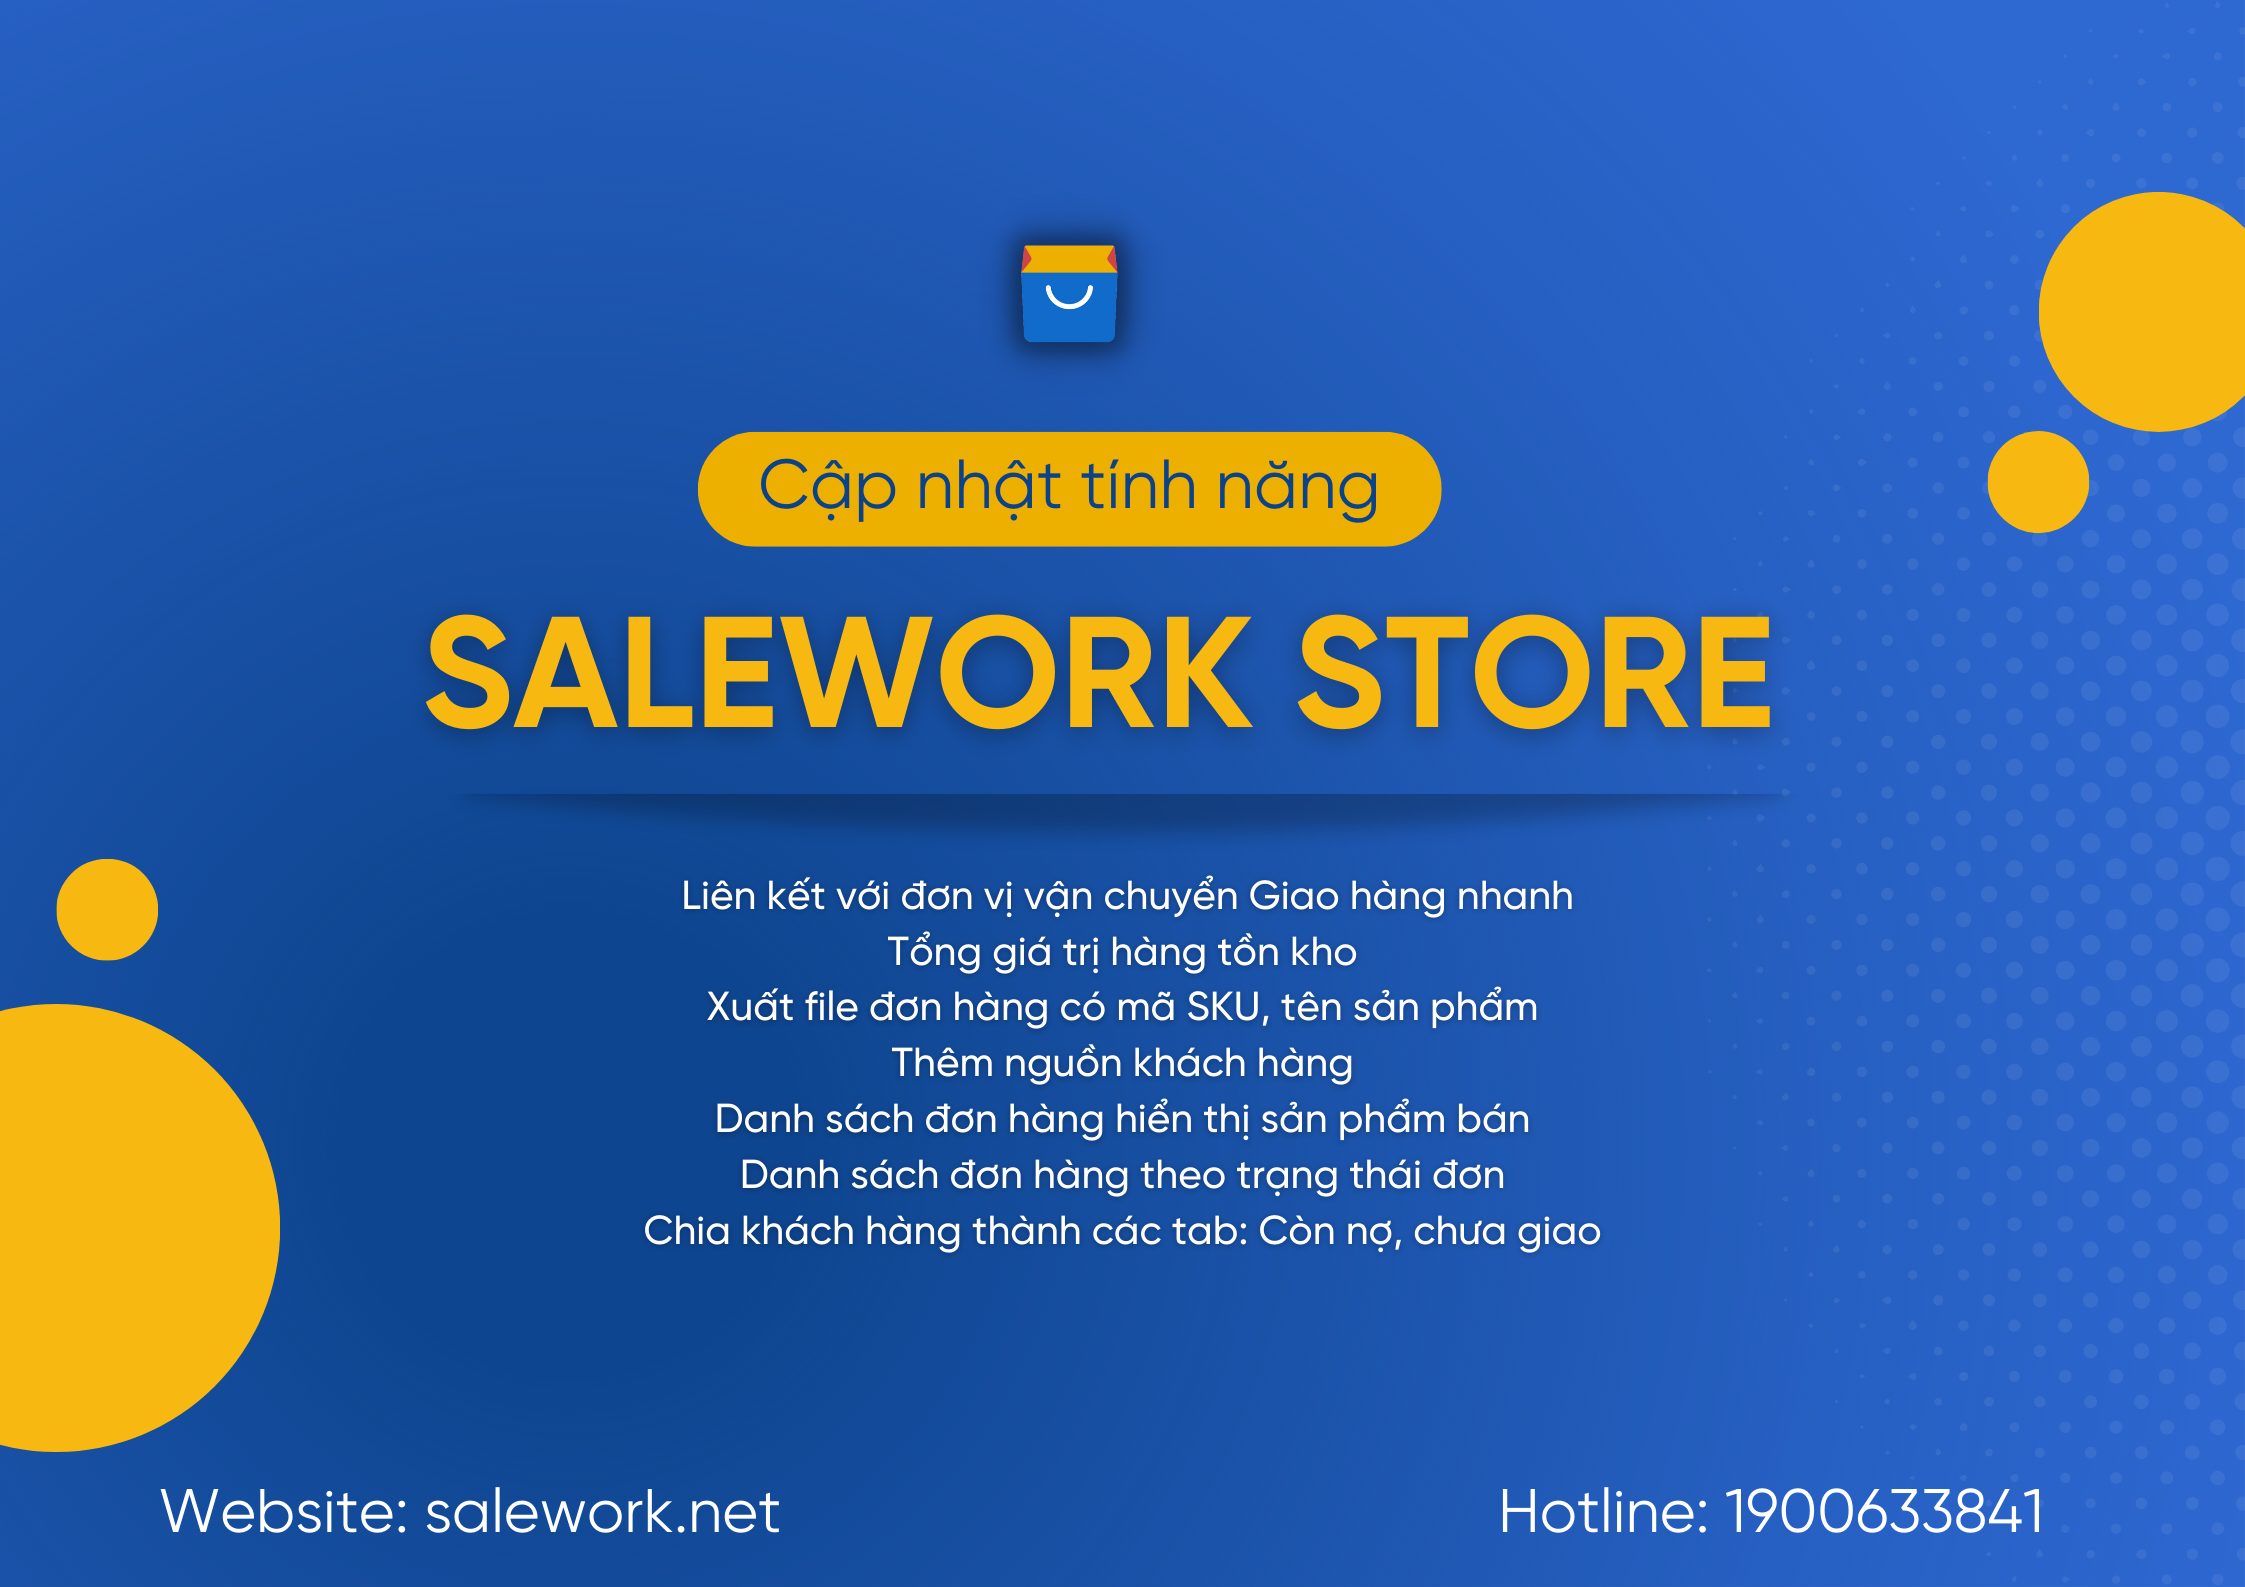 [ Thông báo] Salework Store cập nhật phần mềm - 9